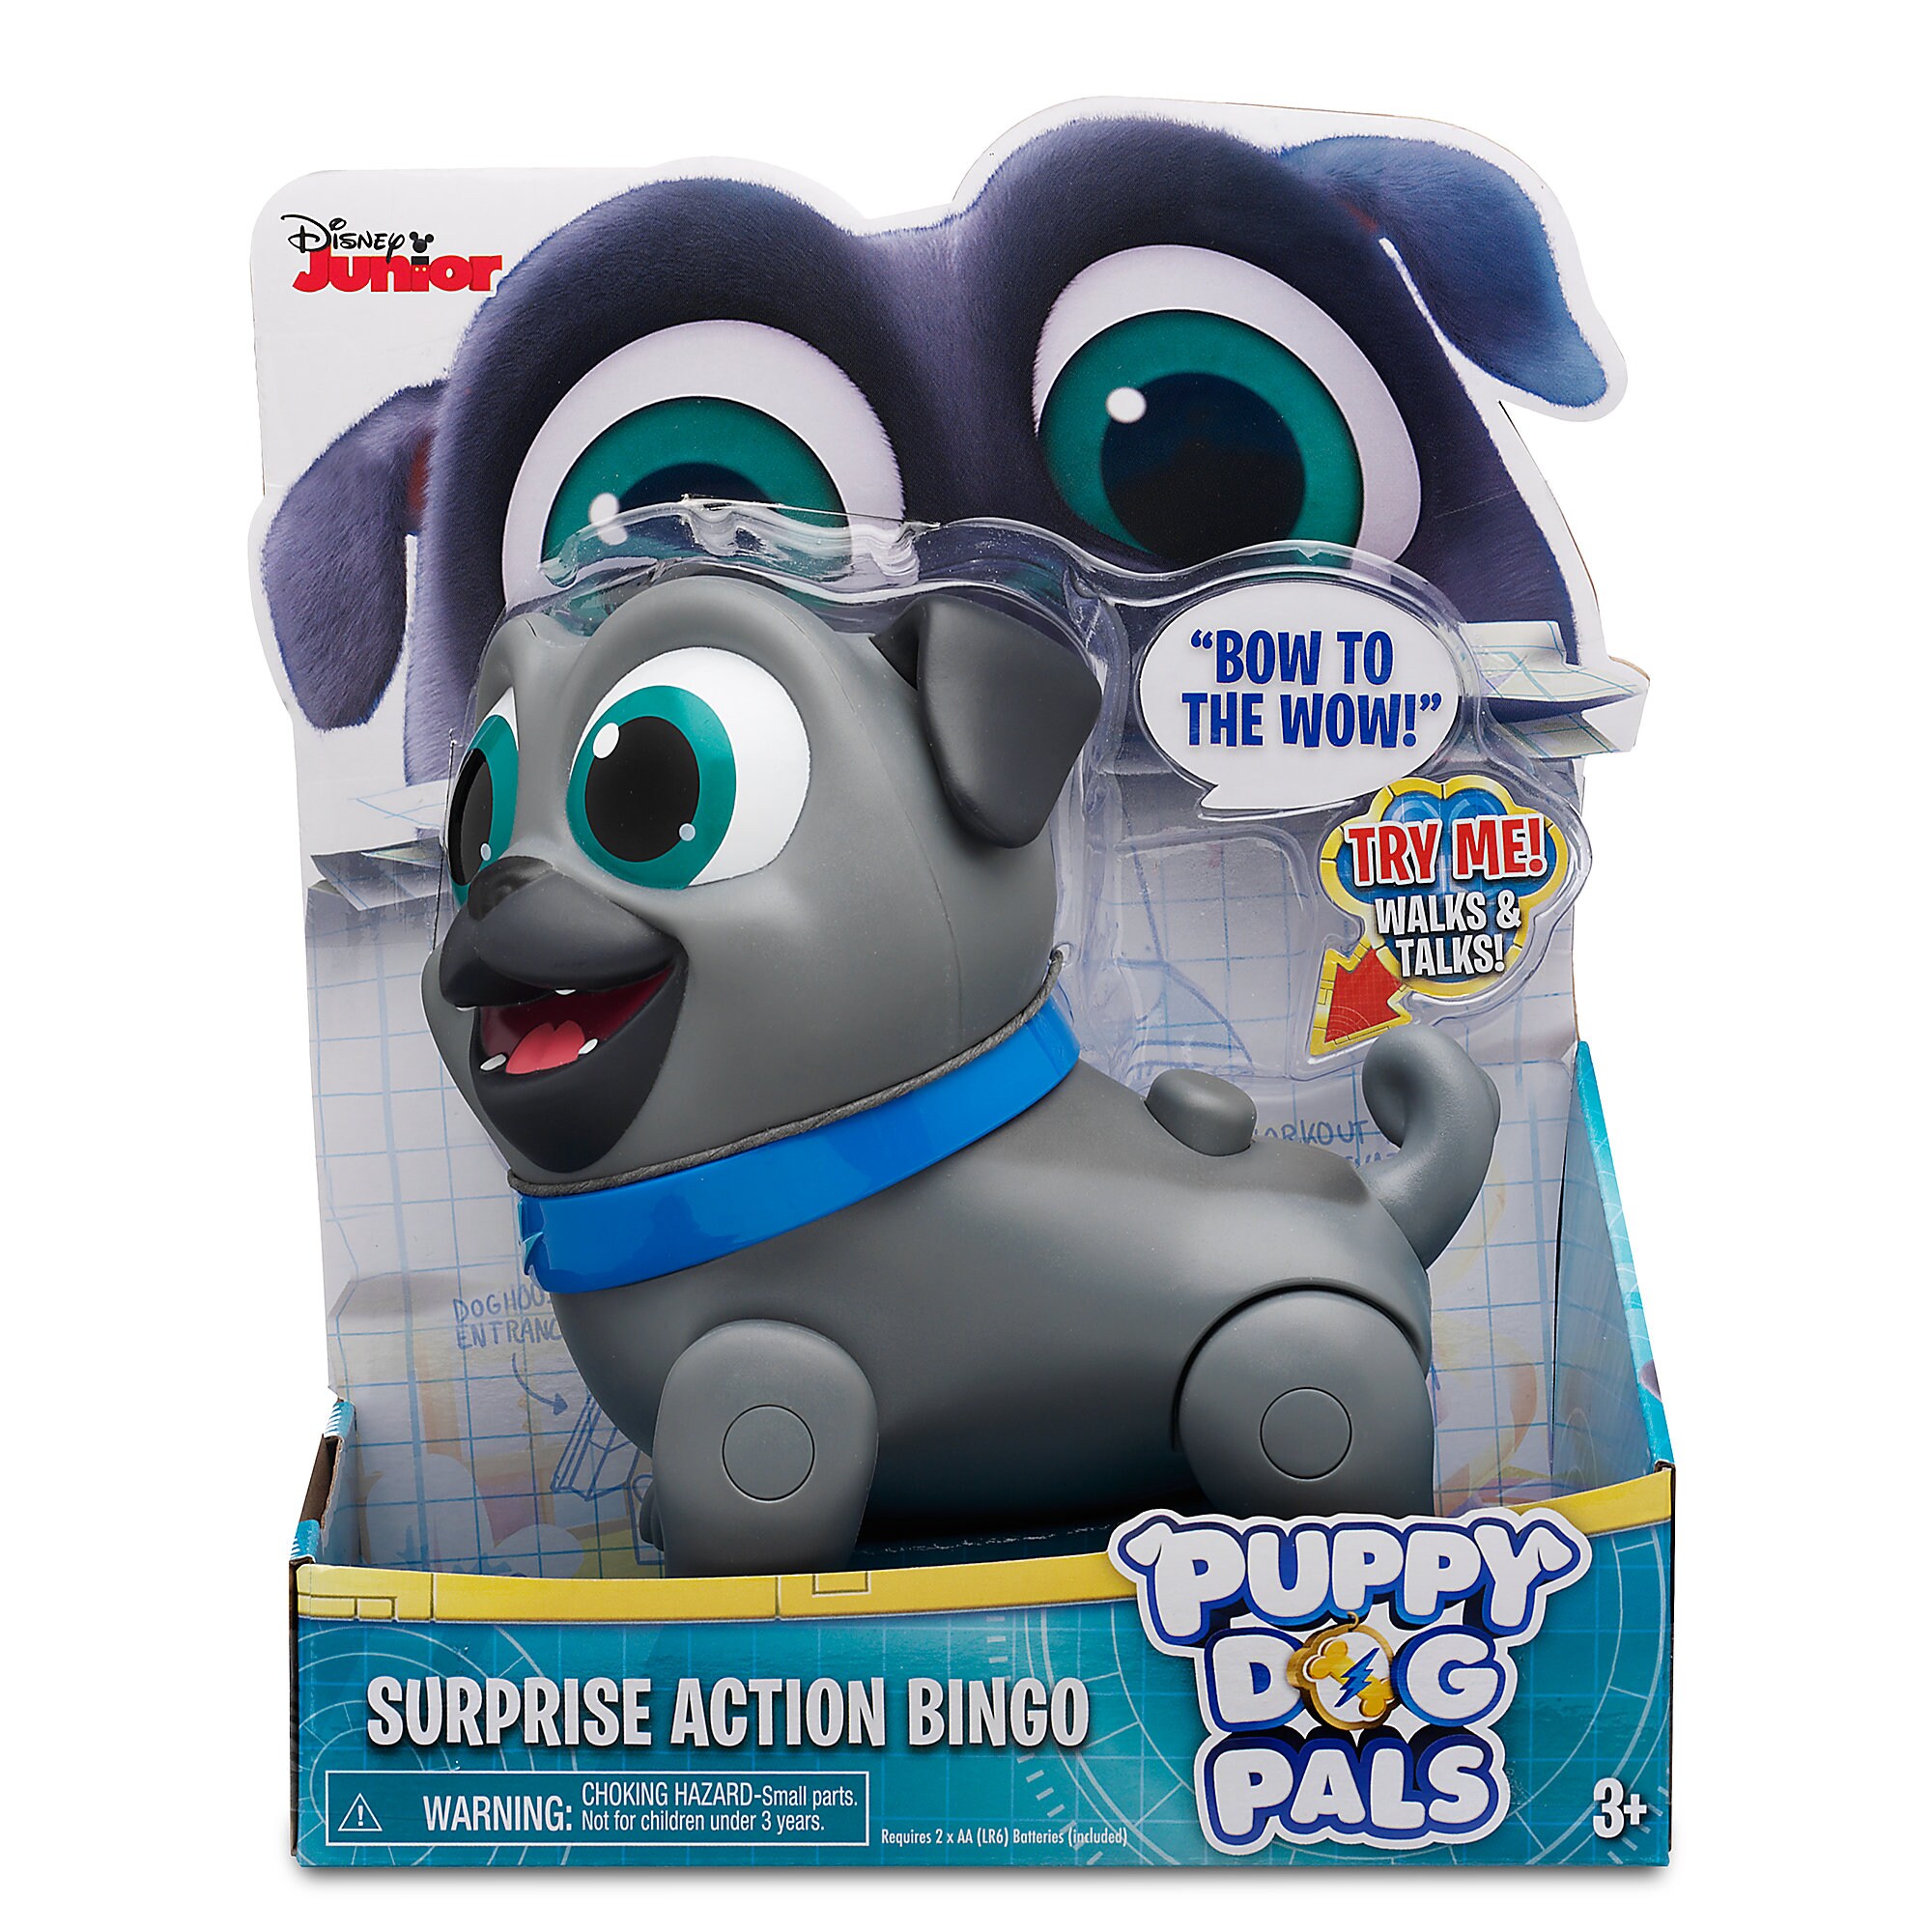 Bingo Surprise Action Toy - Puppy Dog Pals